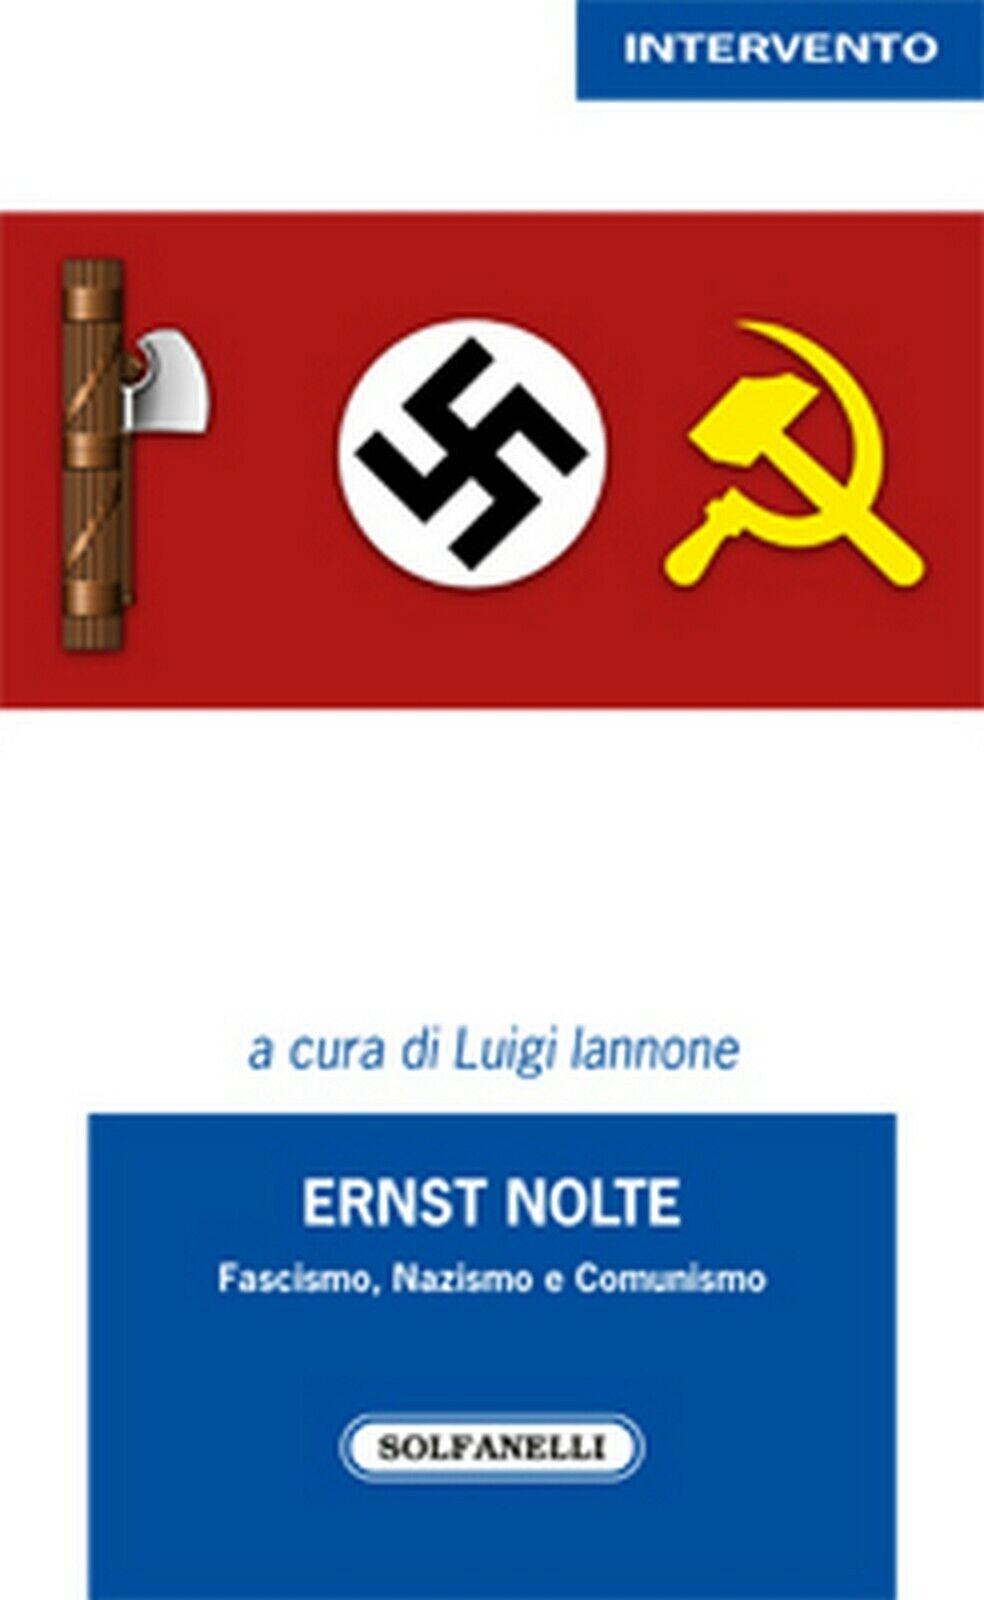 ERNST NOLTE  di Luigi Iannone (a Cura Di),  Solfanelli Edizioni